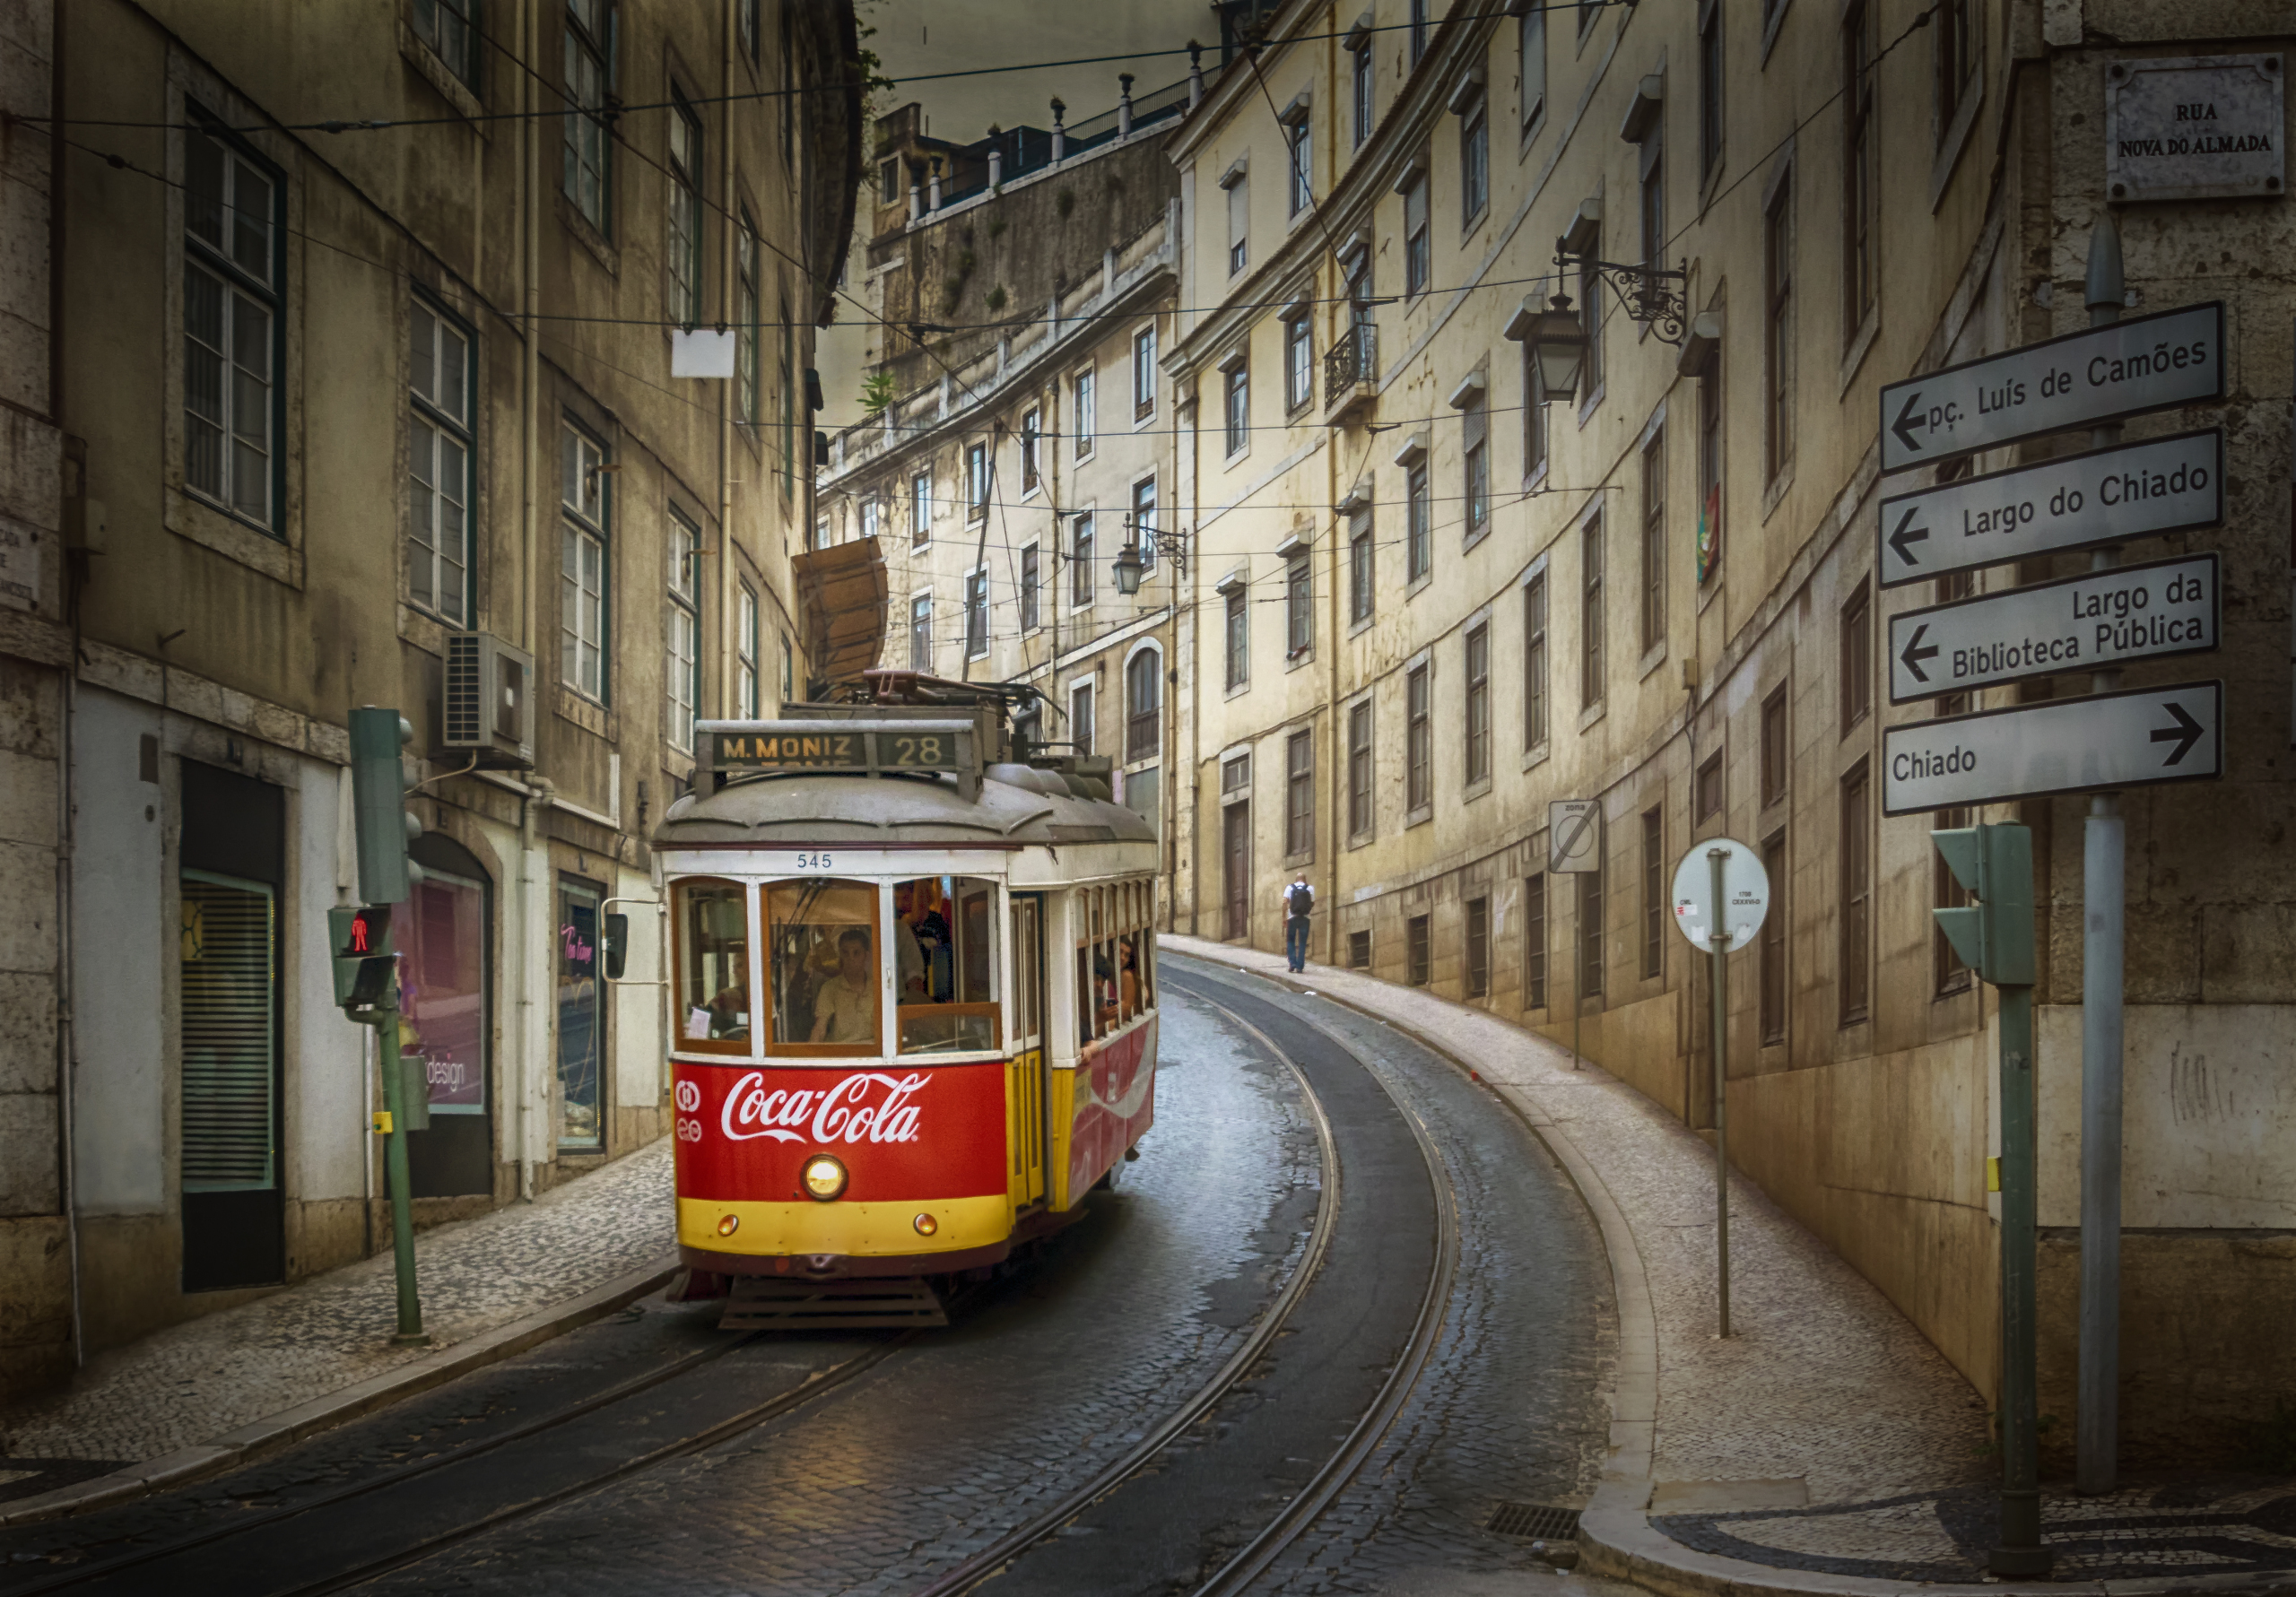 cityscape, Portugal, Lisbon, Tram, Coca Cola Wallpaper